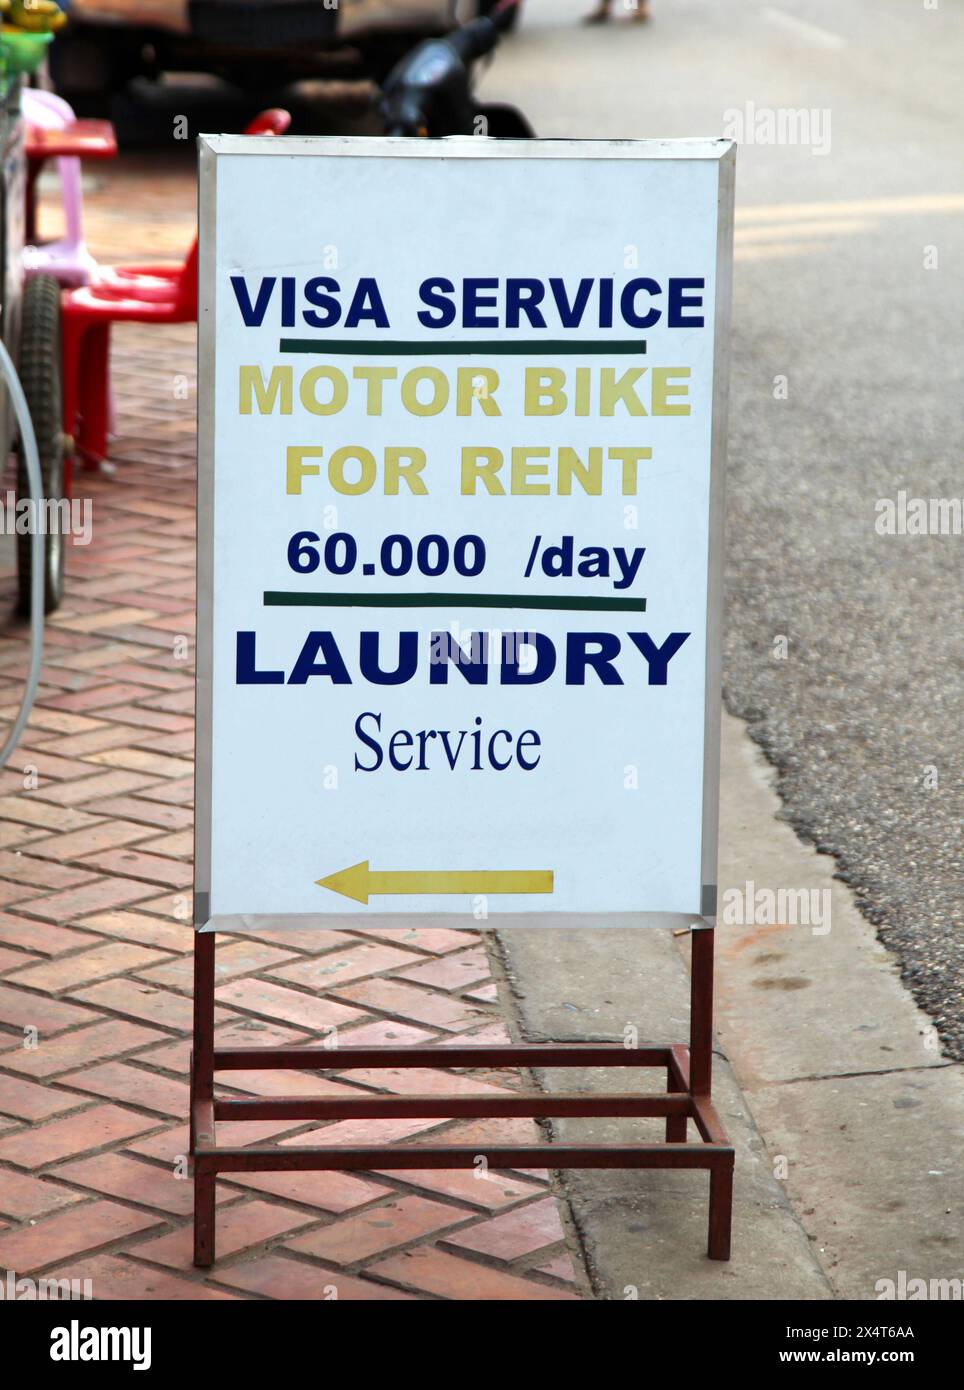 Un signe typique en Asie du Sud-est annonçant les services de voyage essentiels à Backpacker's, y compris voyage Visa's, location de moto et blanchisserie. Banque D'Images